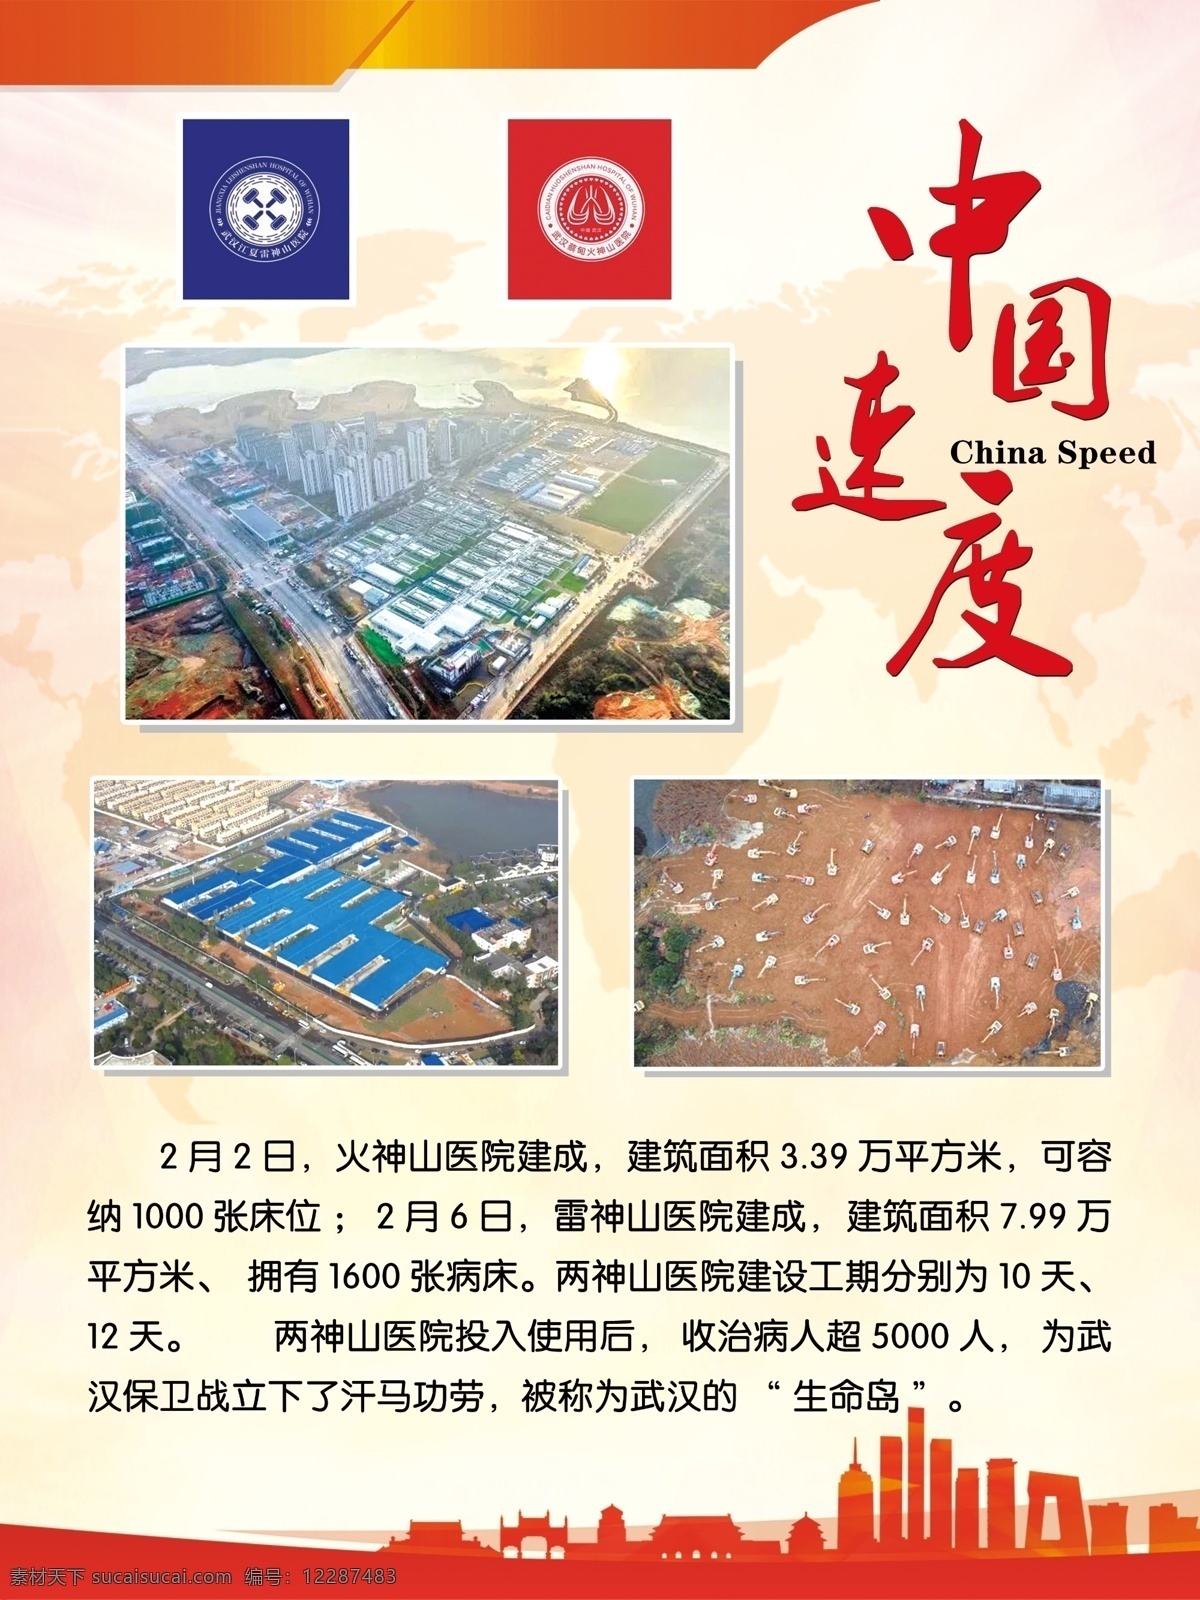 中国速度 疫情 新冠肺炎 火神山 雷神山 城市 抽象背景 红色展板 展板